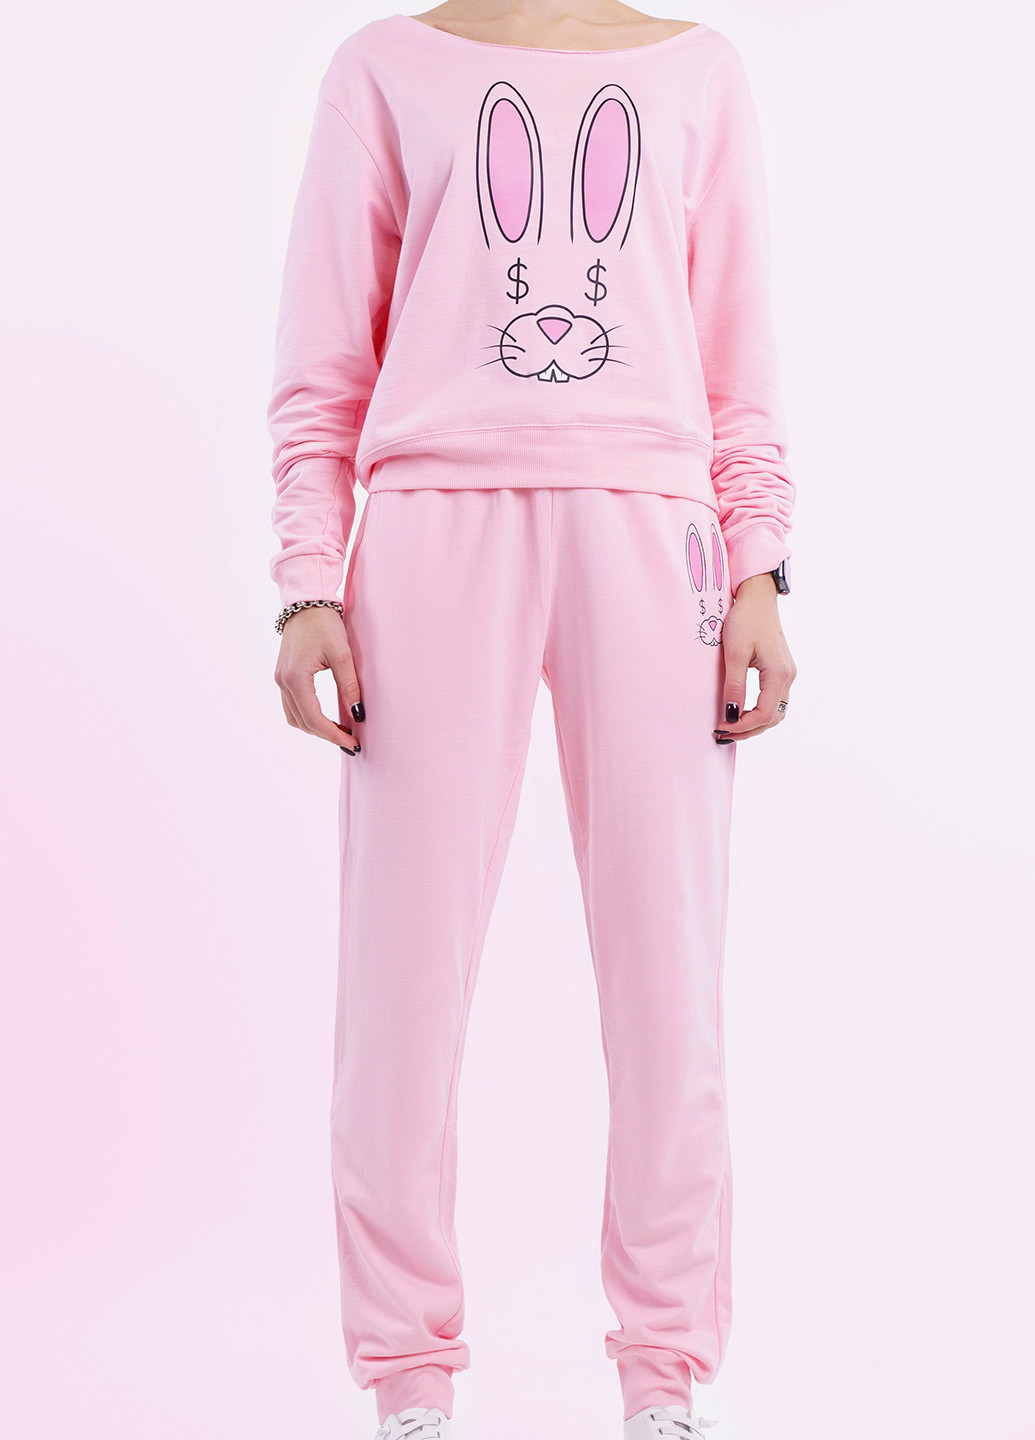 Розовые спортивные джоггеры брюки Lady Bunny